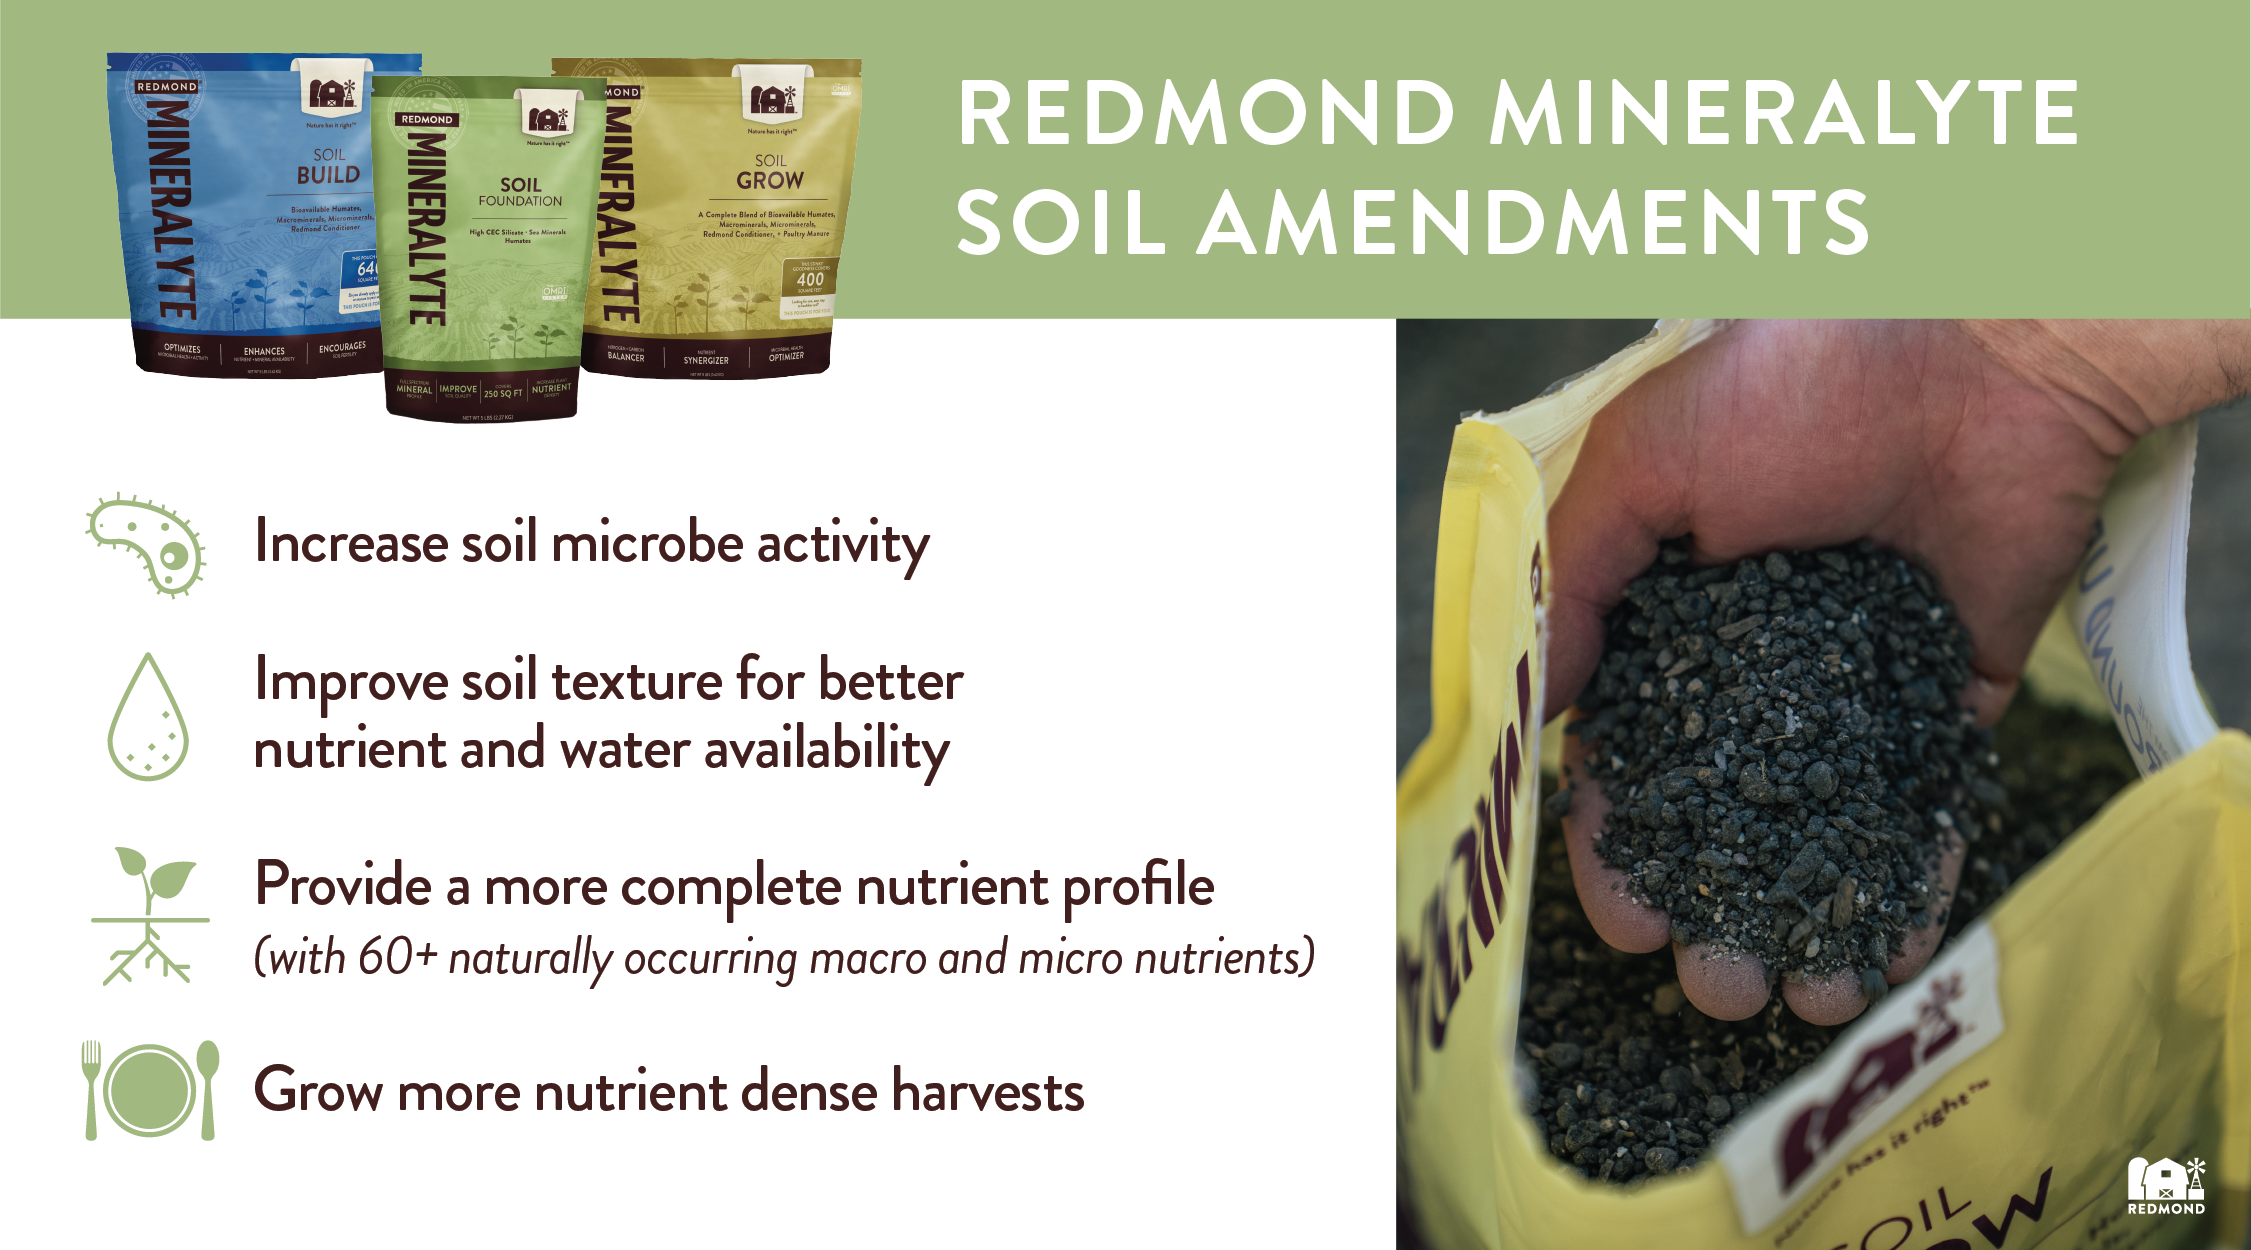 Redmond Mineralyte Soil Amendments